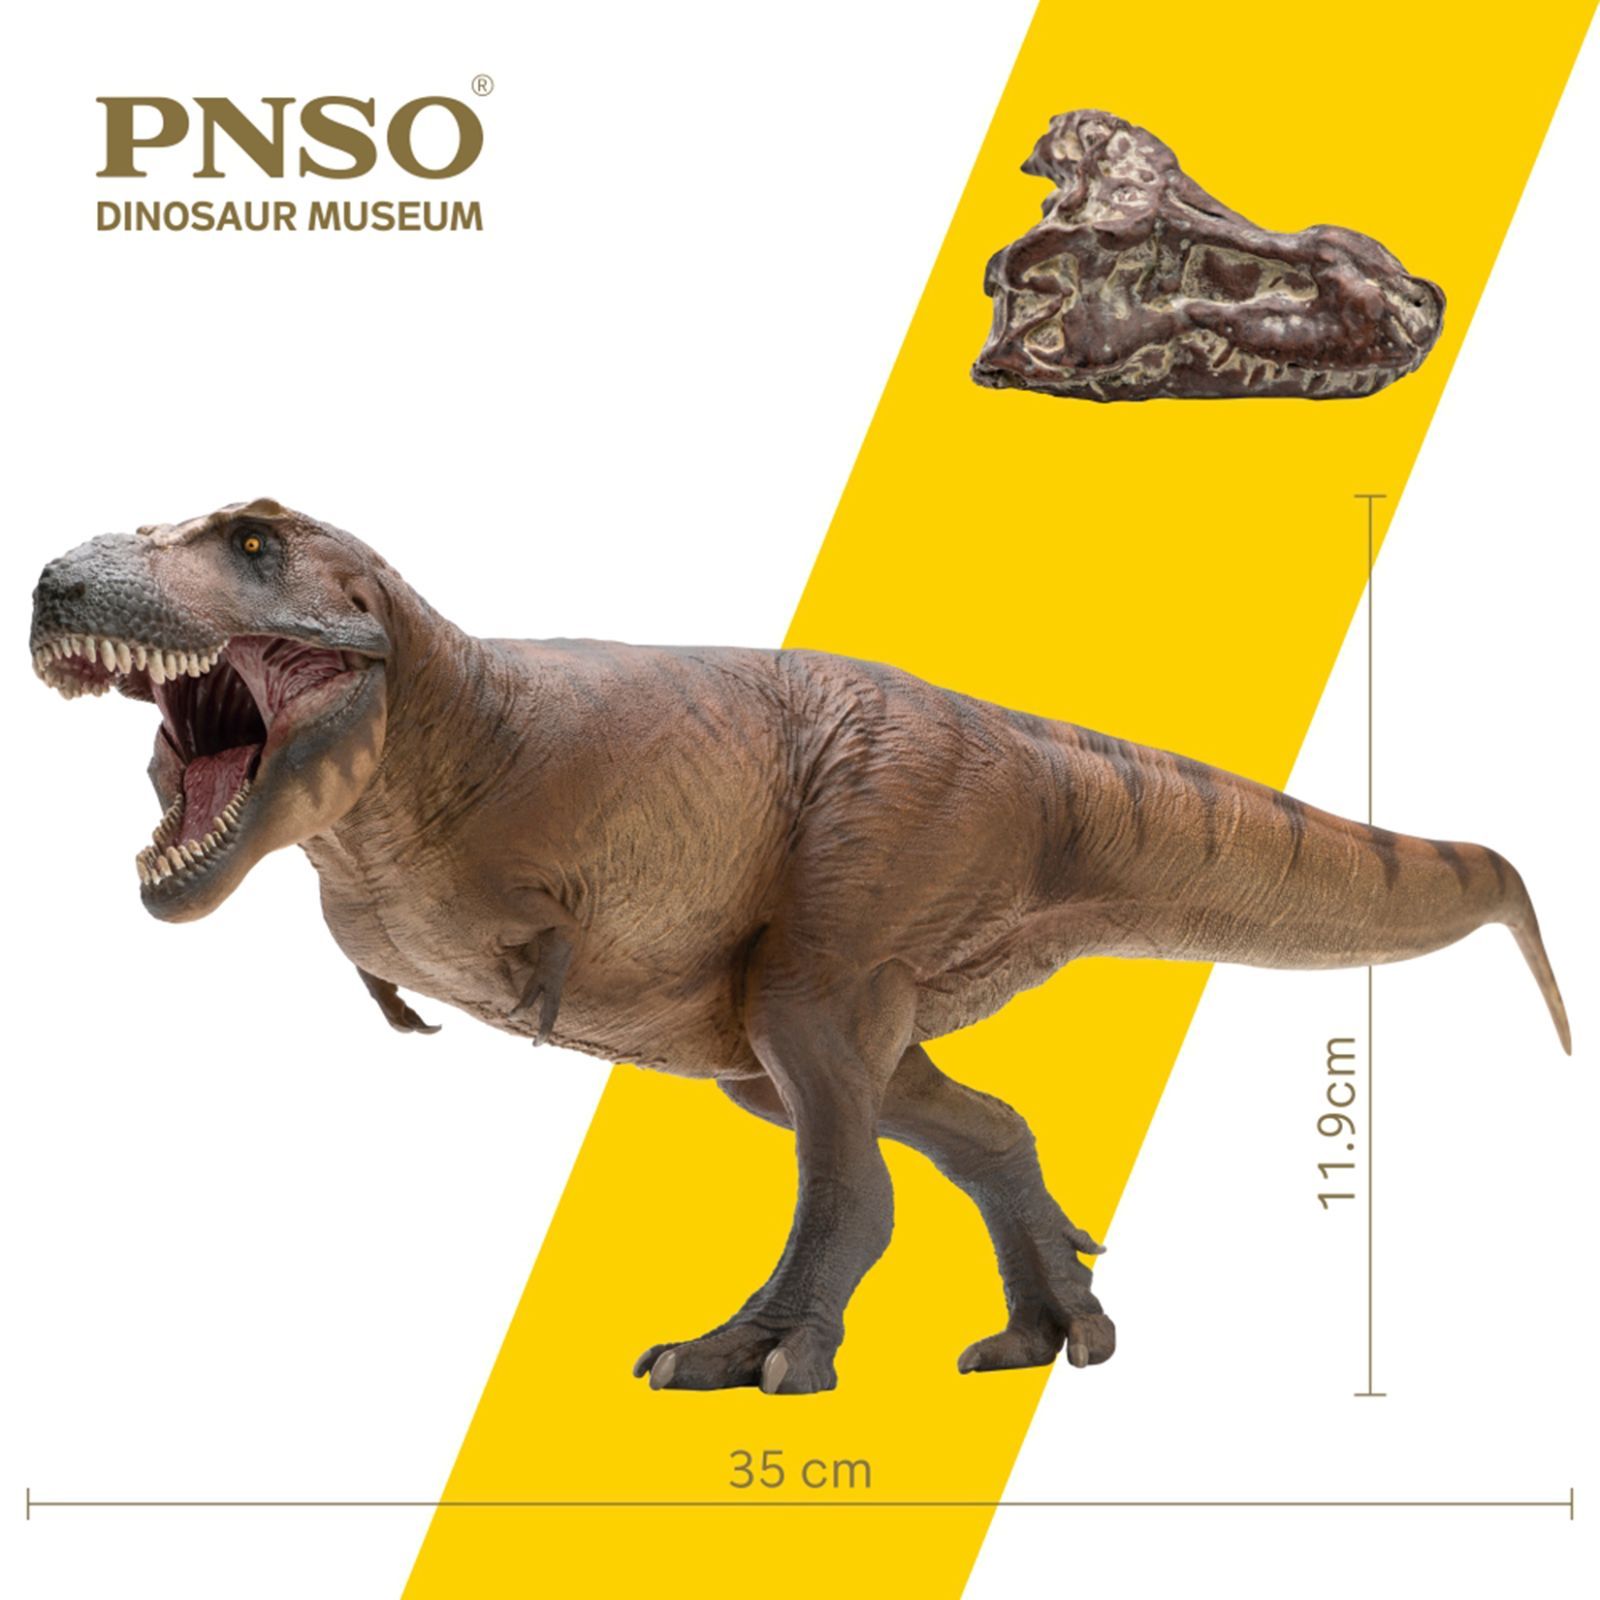 PNSO 恐竜博物館 1/35 サイズ ティラノサウルス T-REX フィギュア 